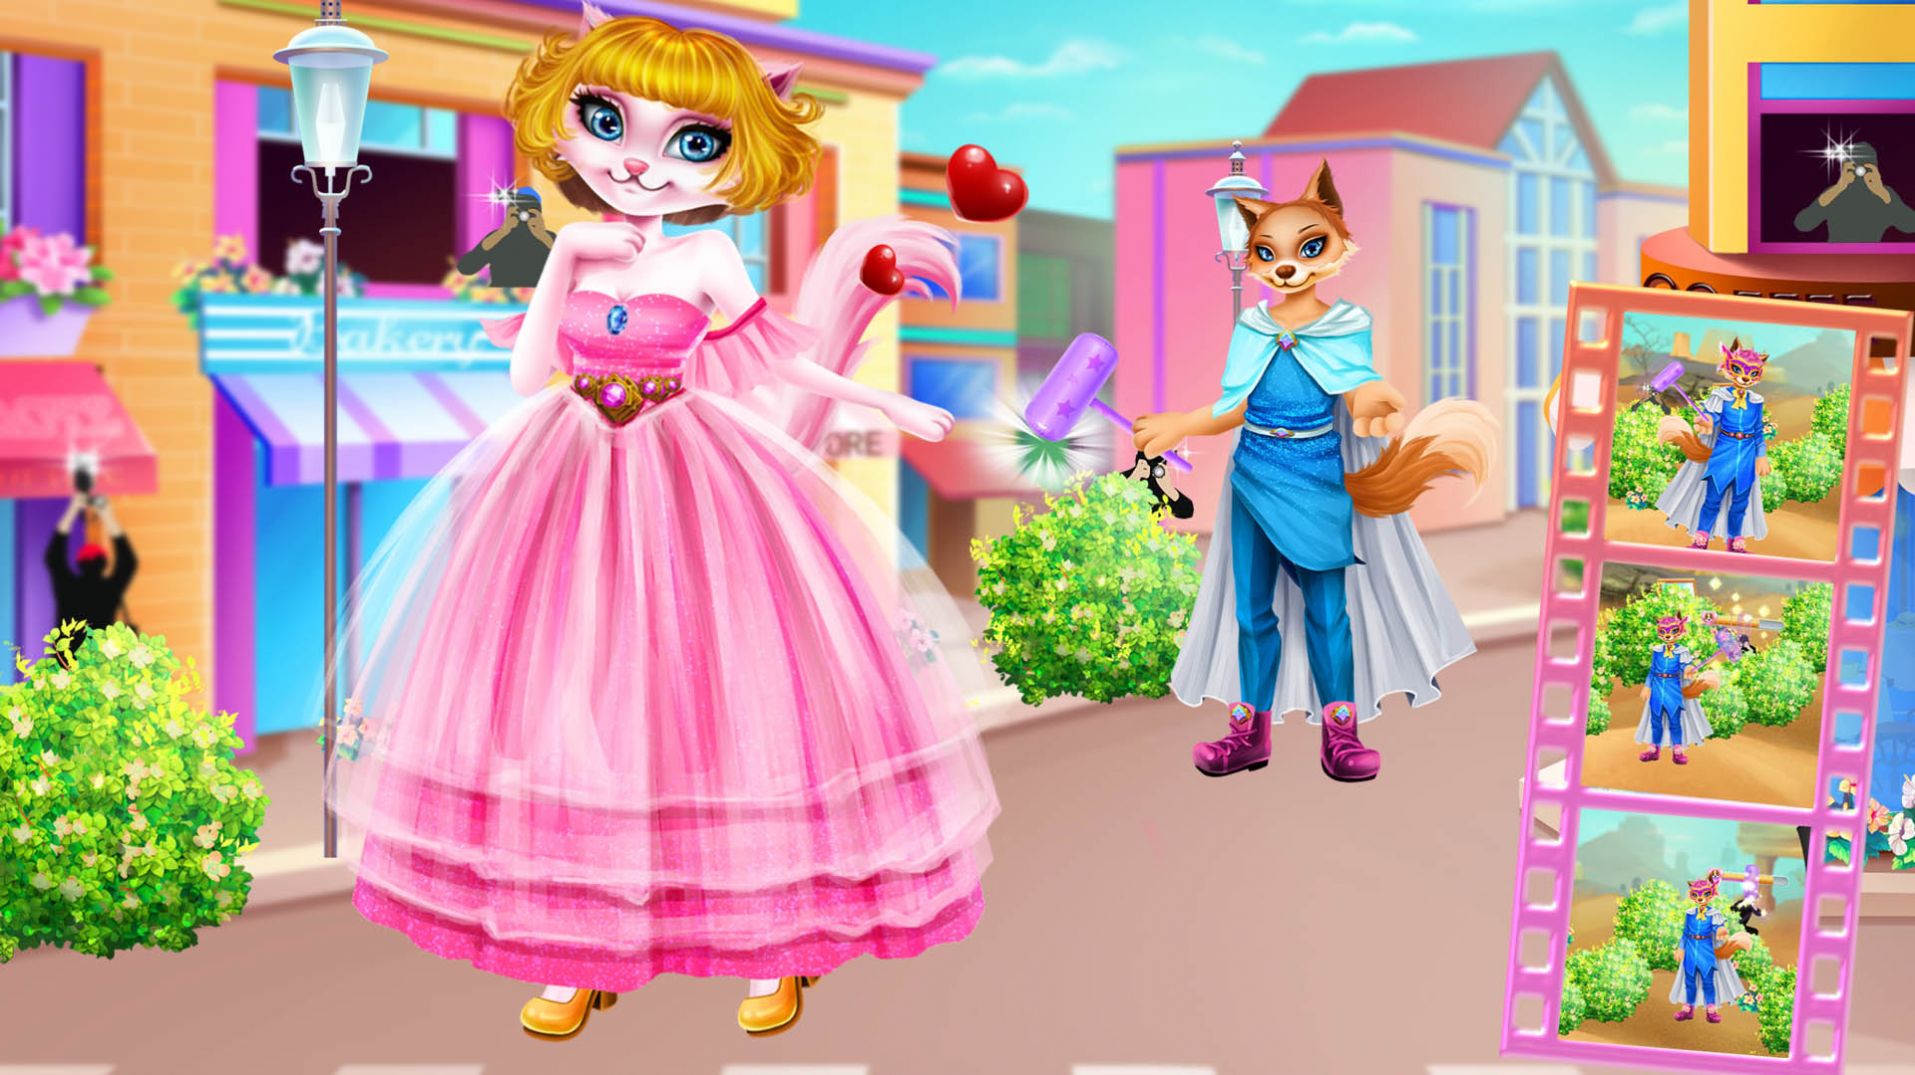 猫公主和狗王子手游手游下载-猫公主和狗王子手游最新版游戏下载 V8.0.1